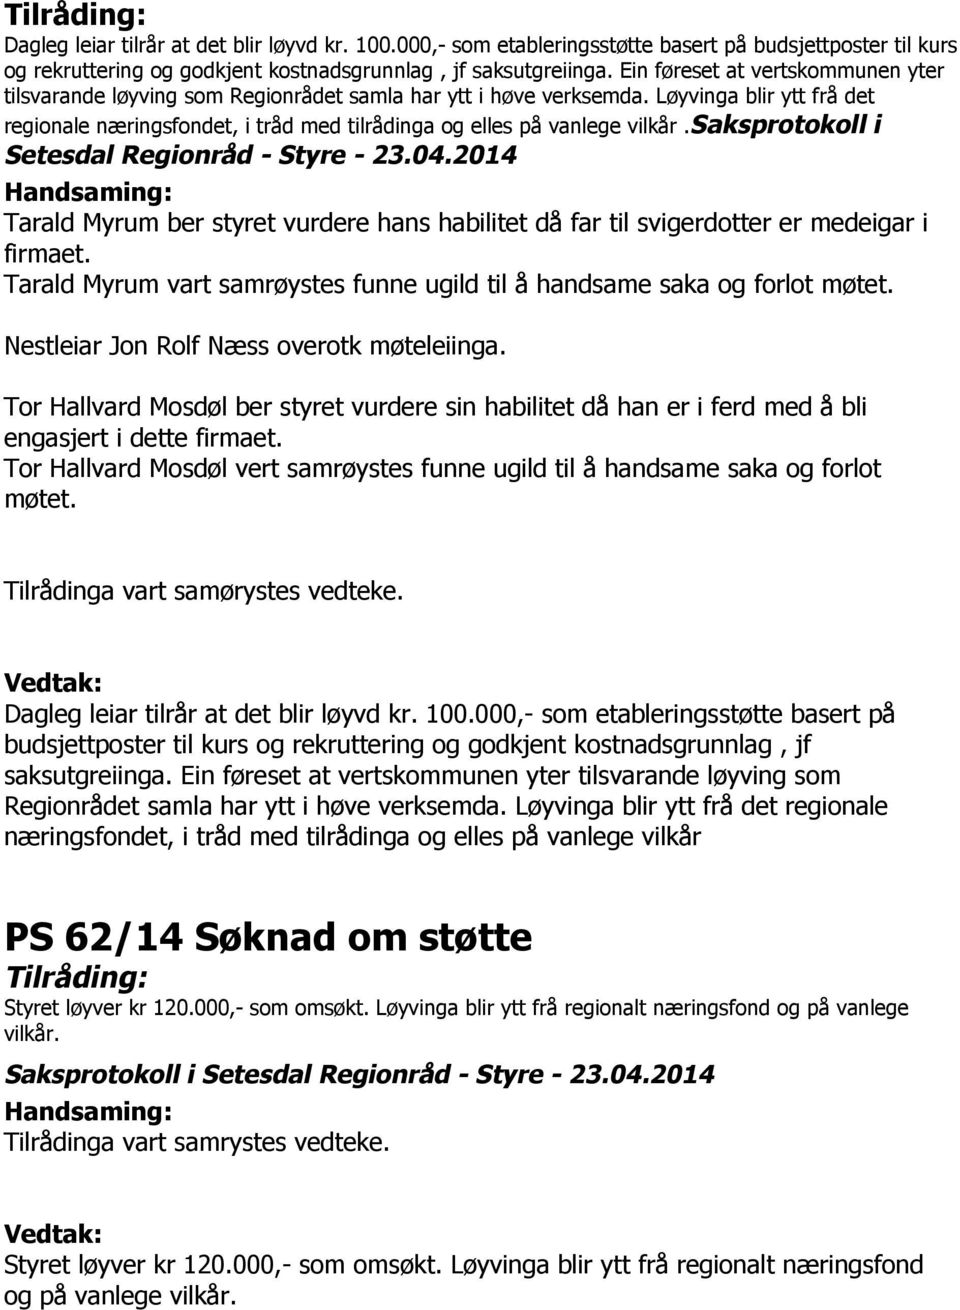 Løyvinga blir ytt frå det regionale næringsfondet, i tråd med tilrådinga og elles på vanlege vilkår.saksprotokoll i Setesdal Regionråd - Styre - 23.04.